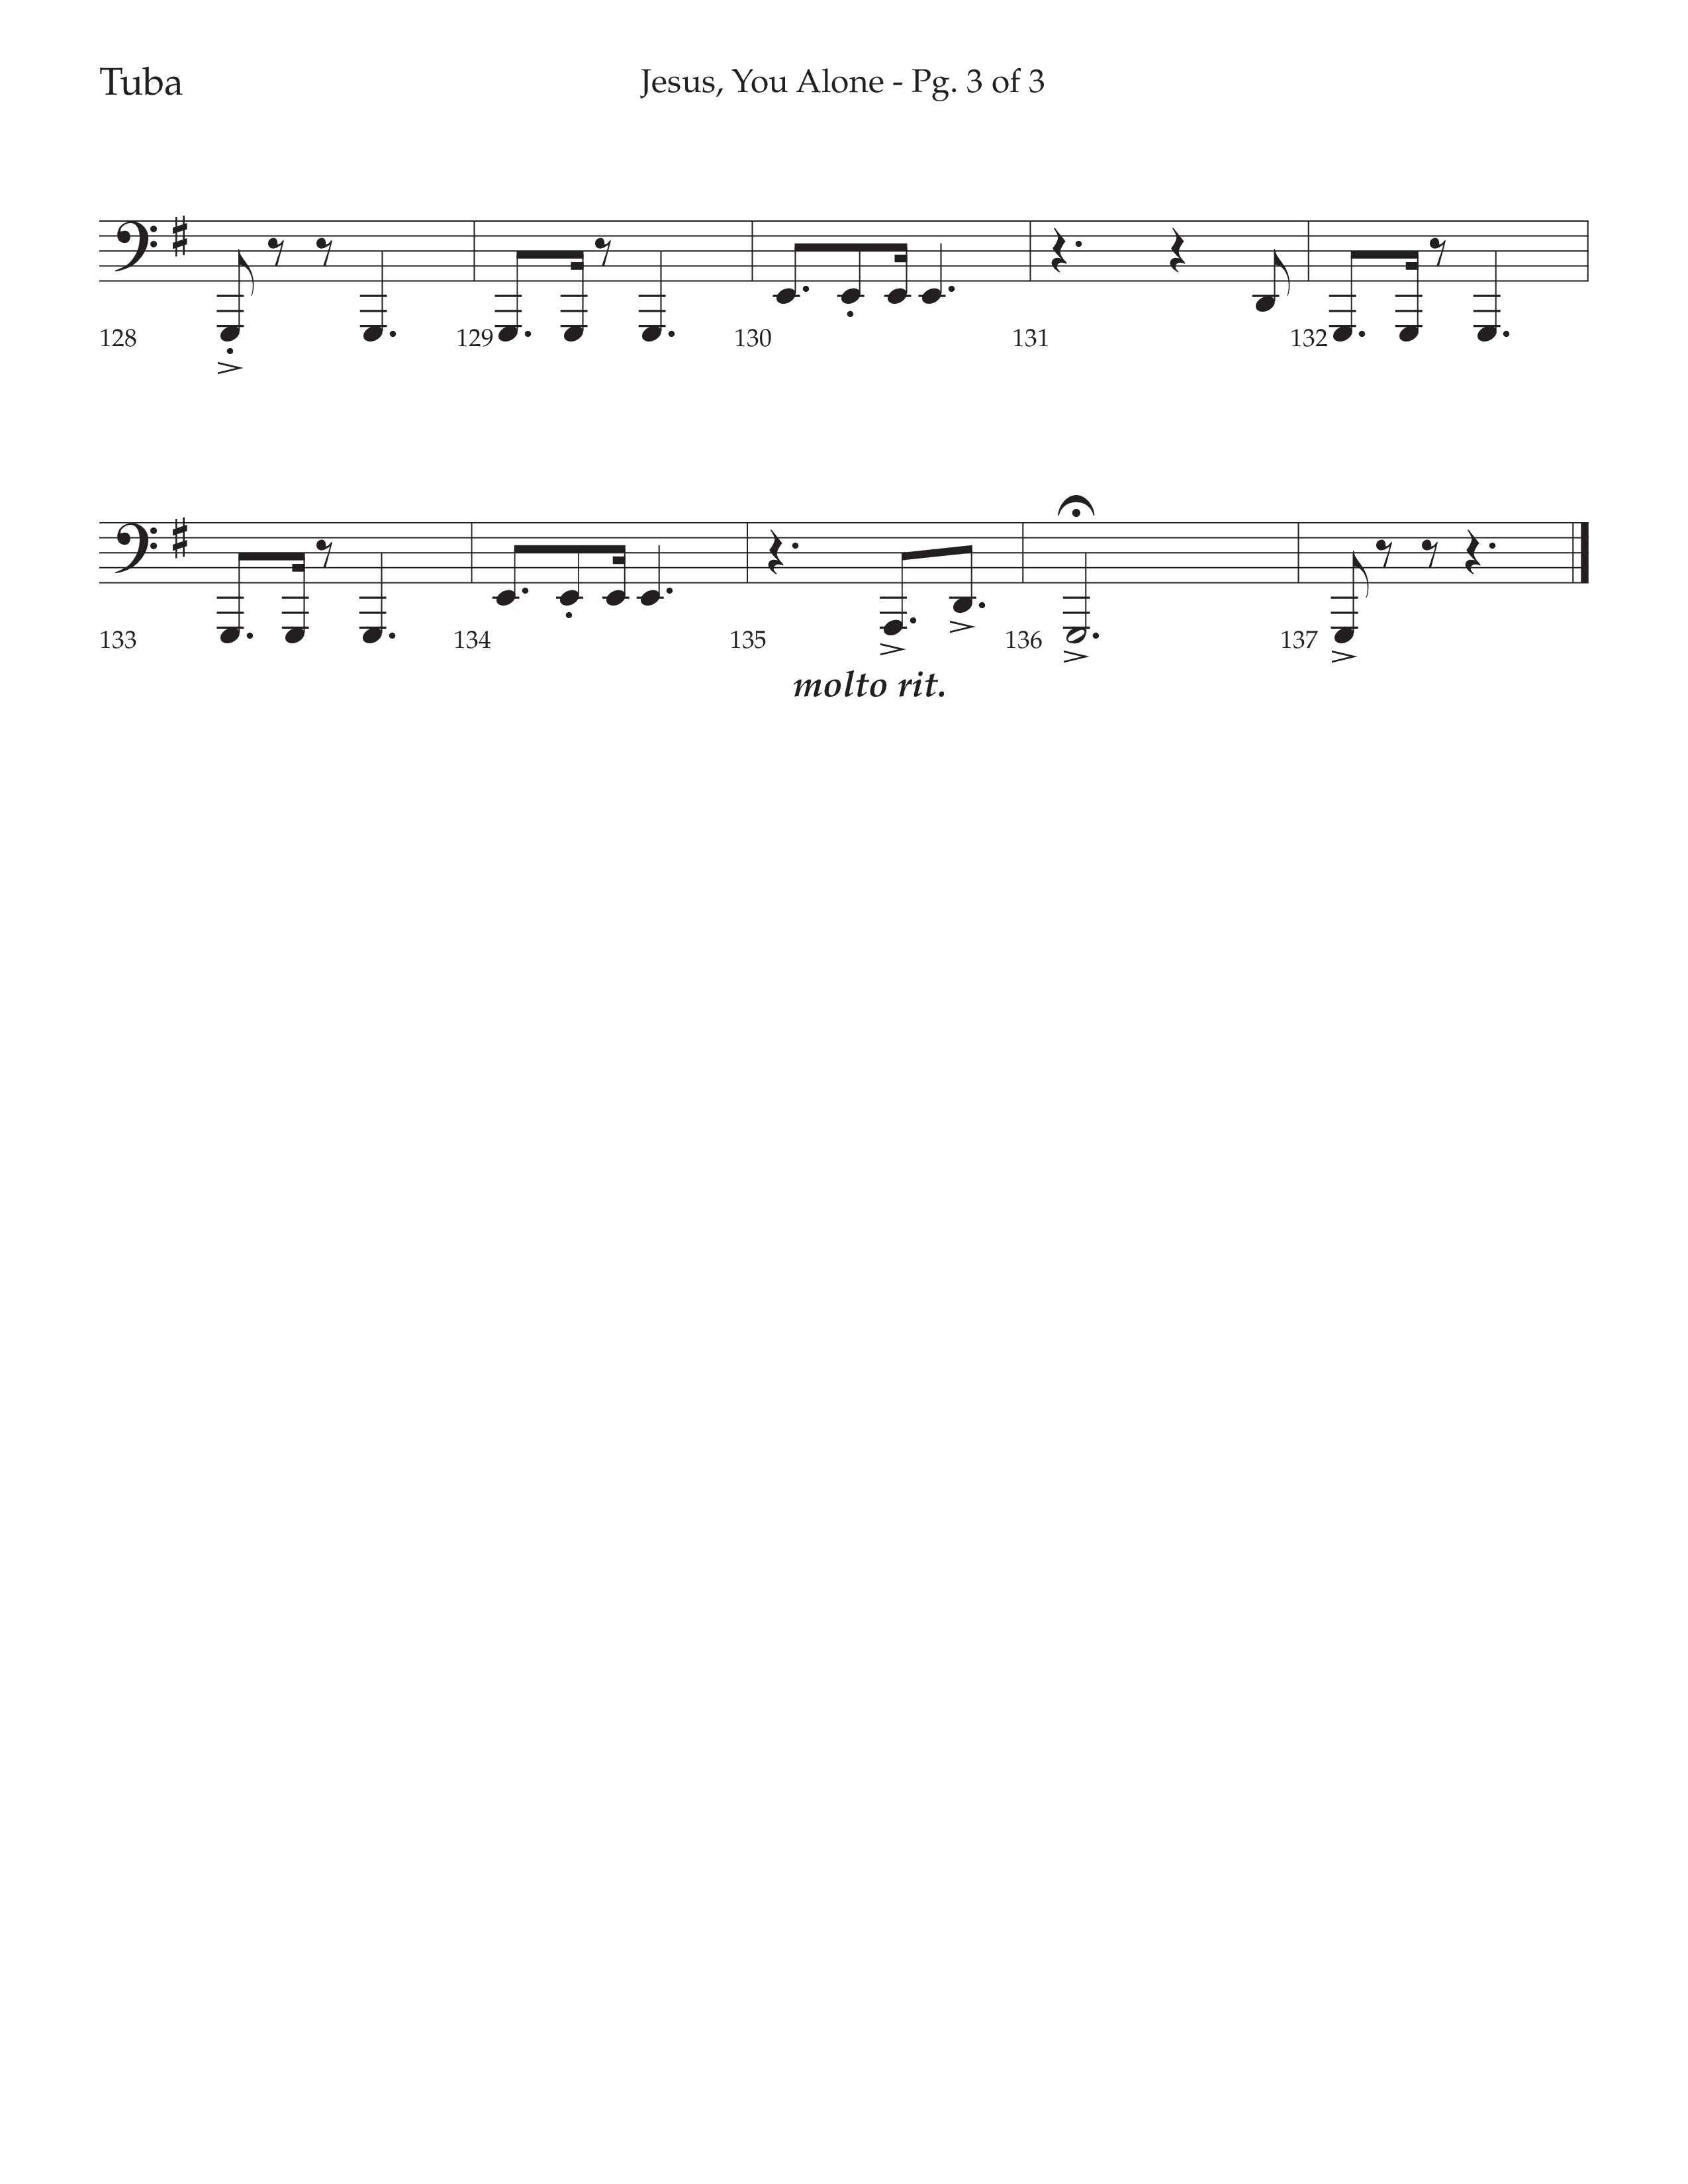 Jesus You Alone (Choral Anthem SATB) Tuba (Lifeway Choral / Arr. David Wise / Orch. Bradley Knight)